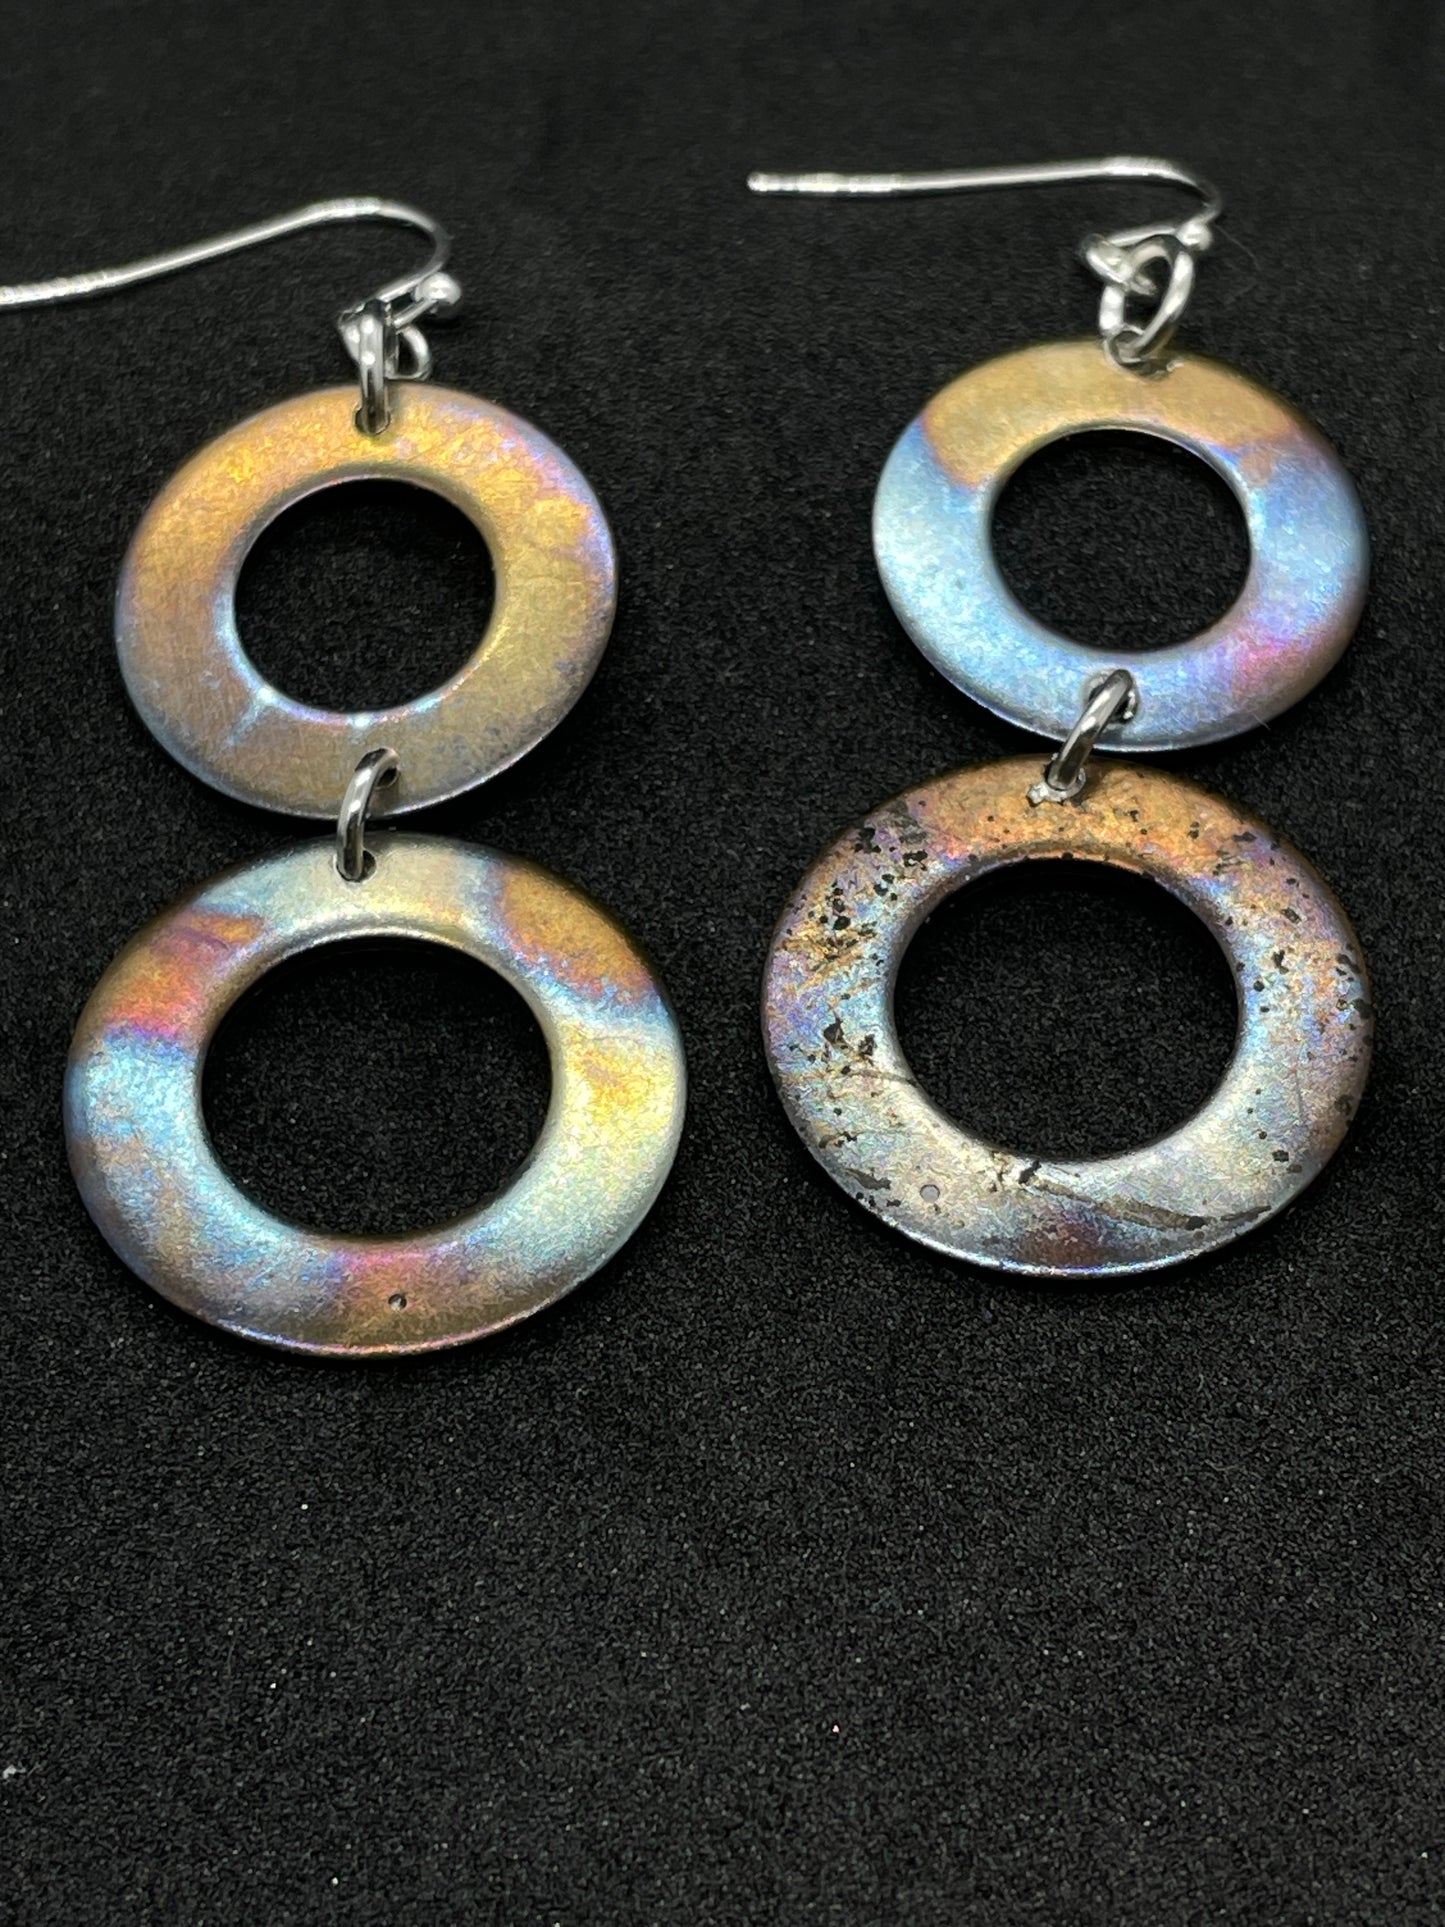 2 rings annealed steel drop earrings